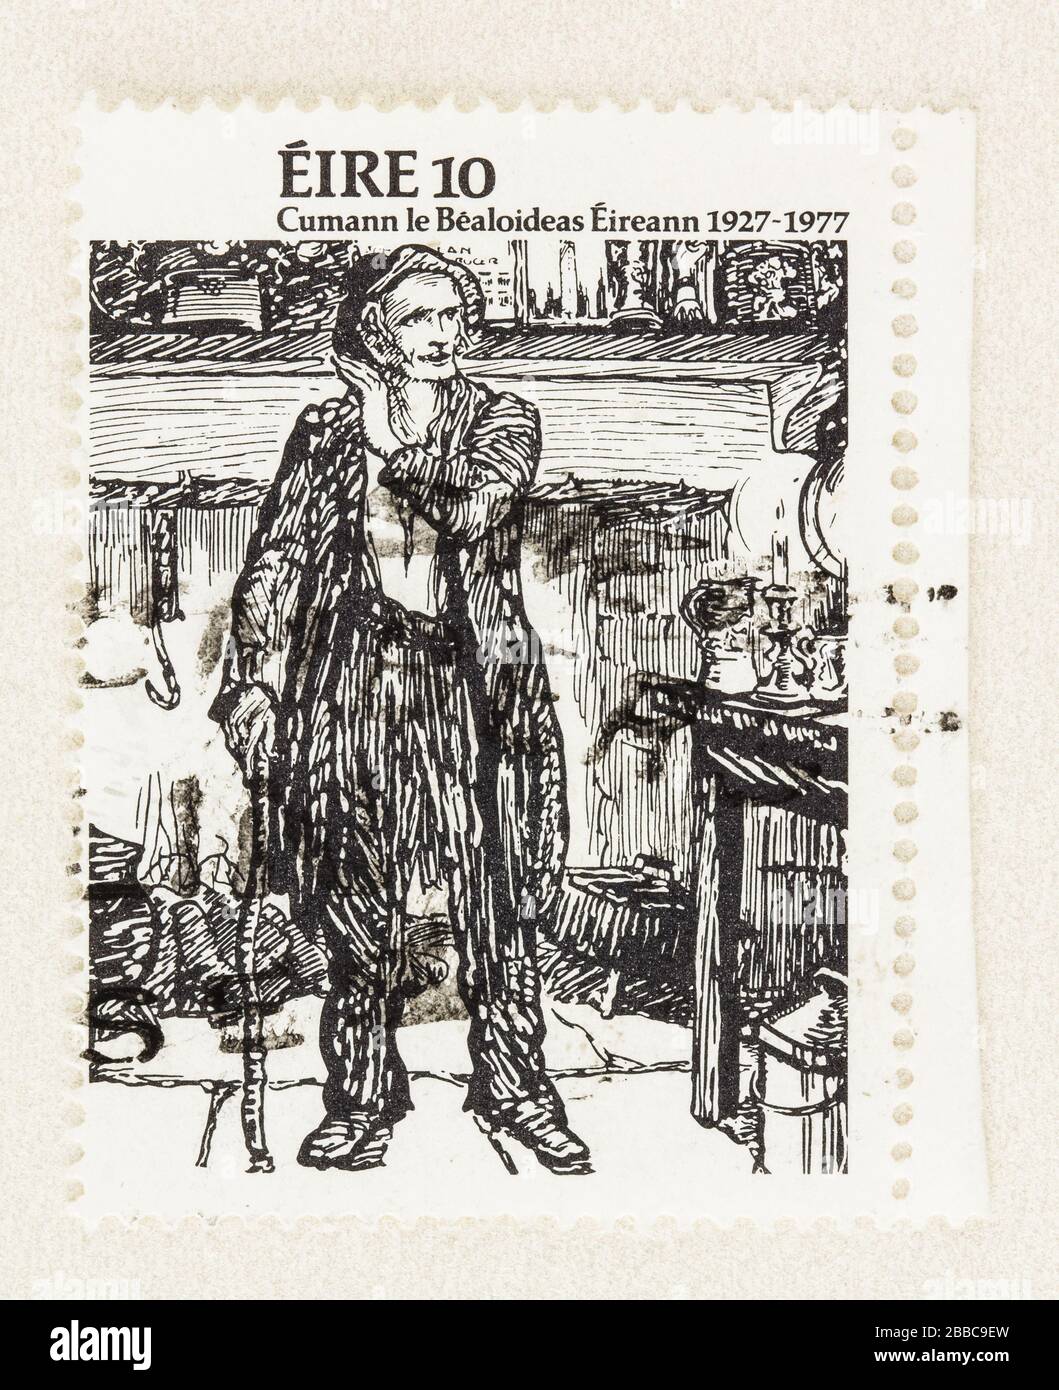 SEATTLE WASHINGTON - 29. März 2020: Nahaufnahme der Briefmarke zur Erinnerung an die irische Folklore. Stempel mit Zeichnung der Shanachie, der Ballad Singer. Stockfoto